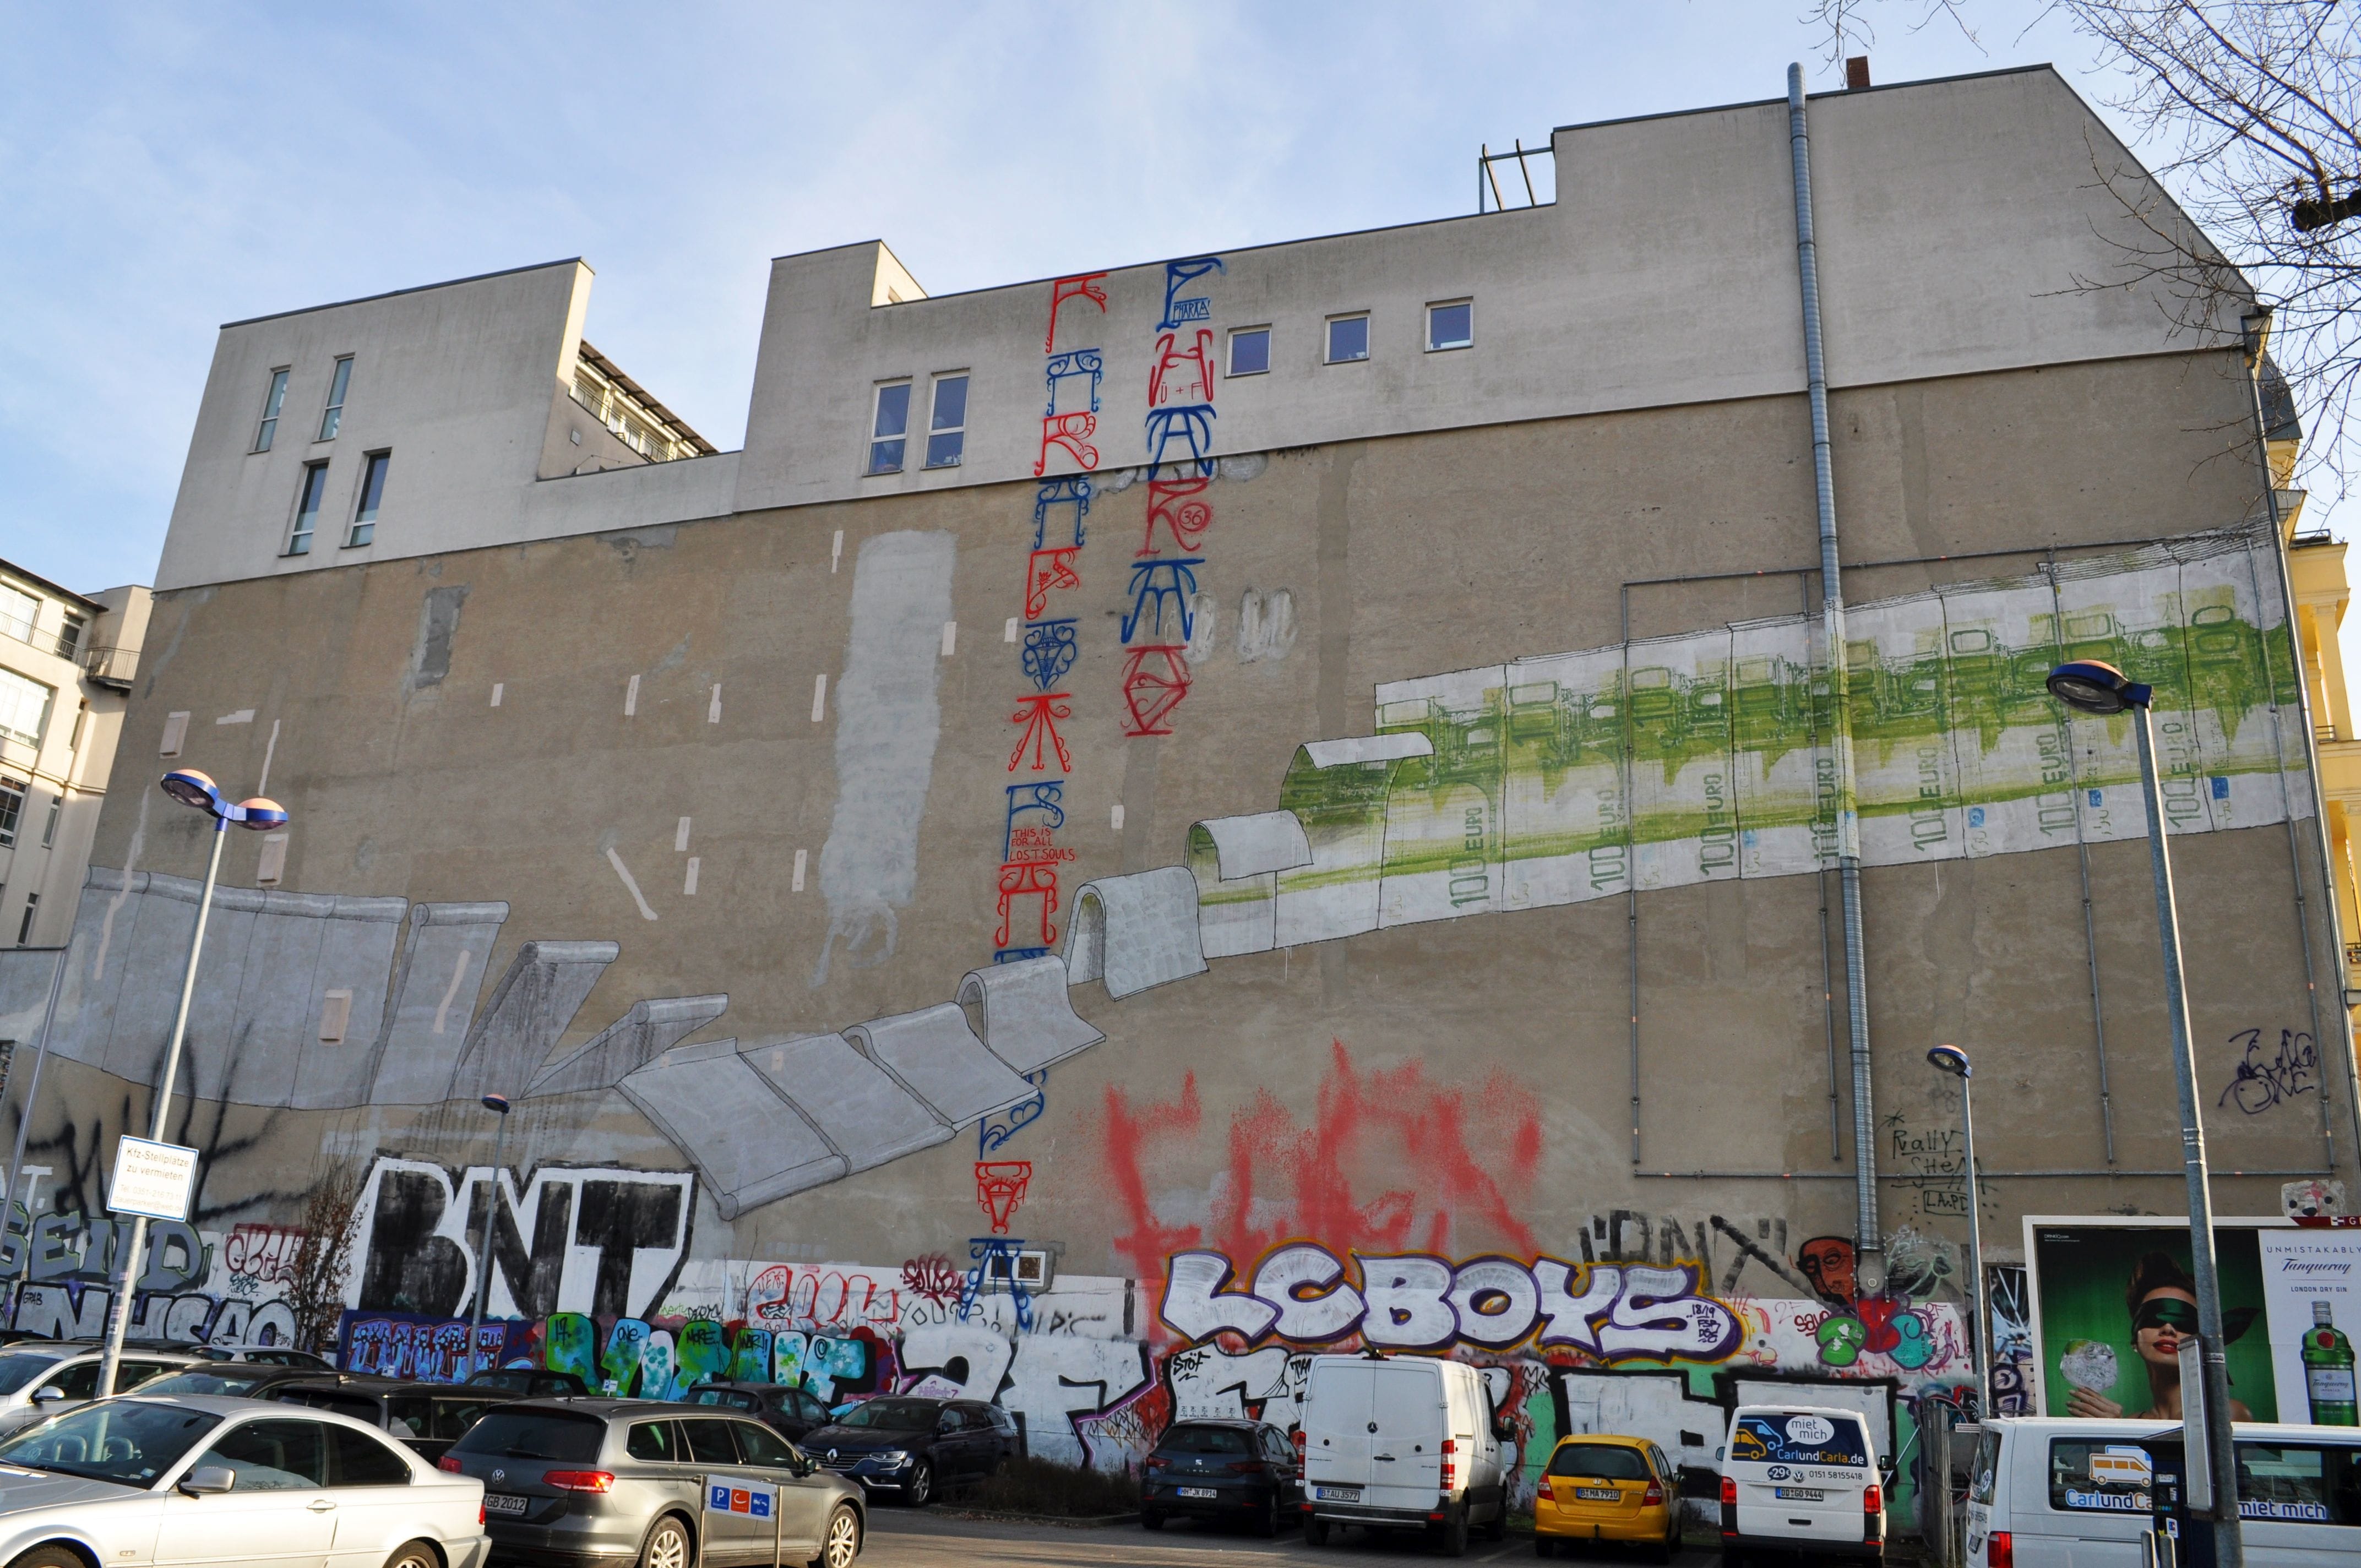 Graffiti 4660 € Wall by the artist Blu captured by elettrotajik in Berlin Germany